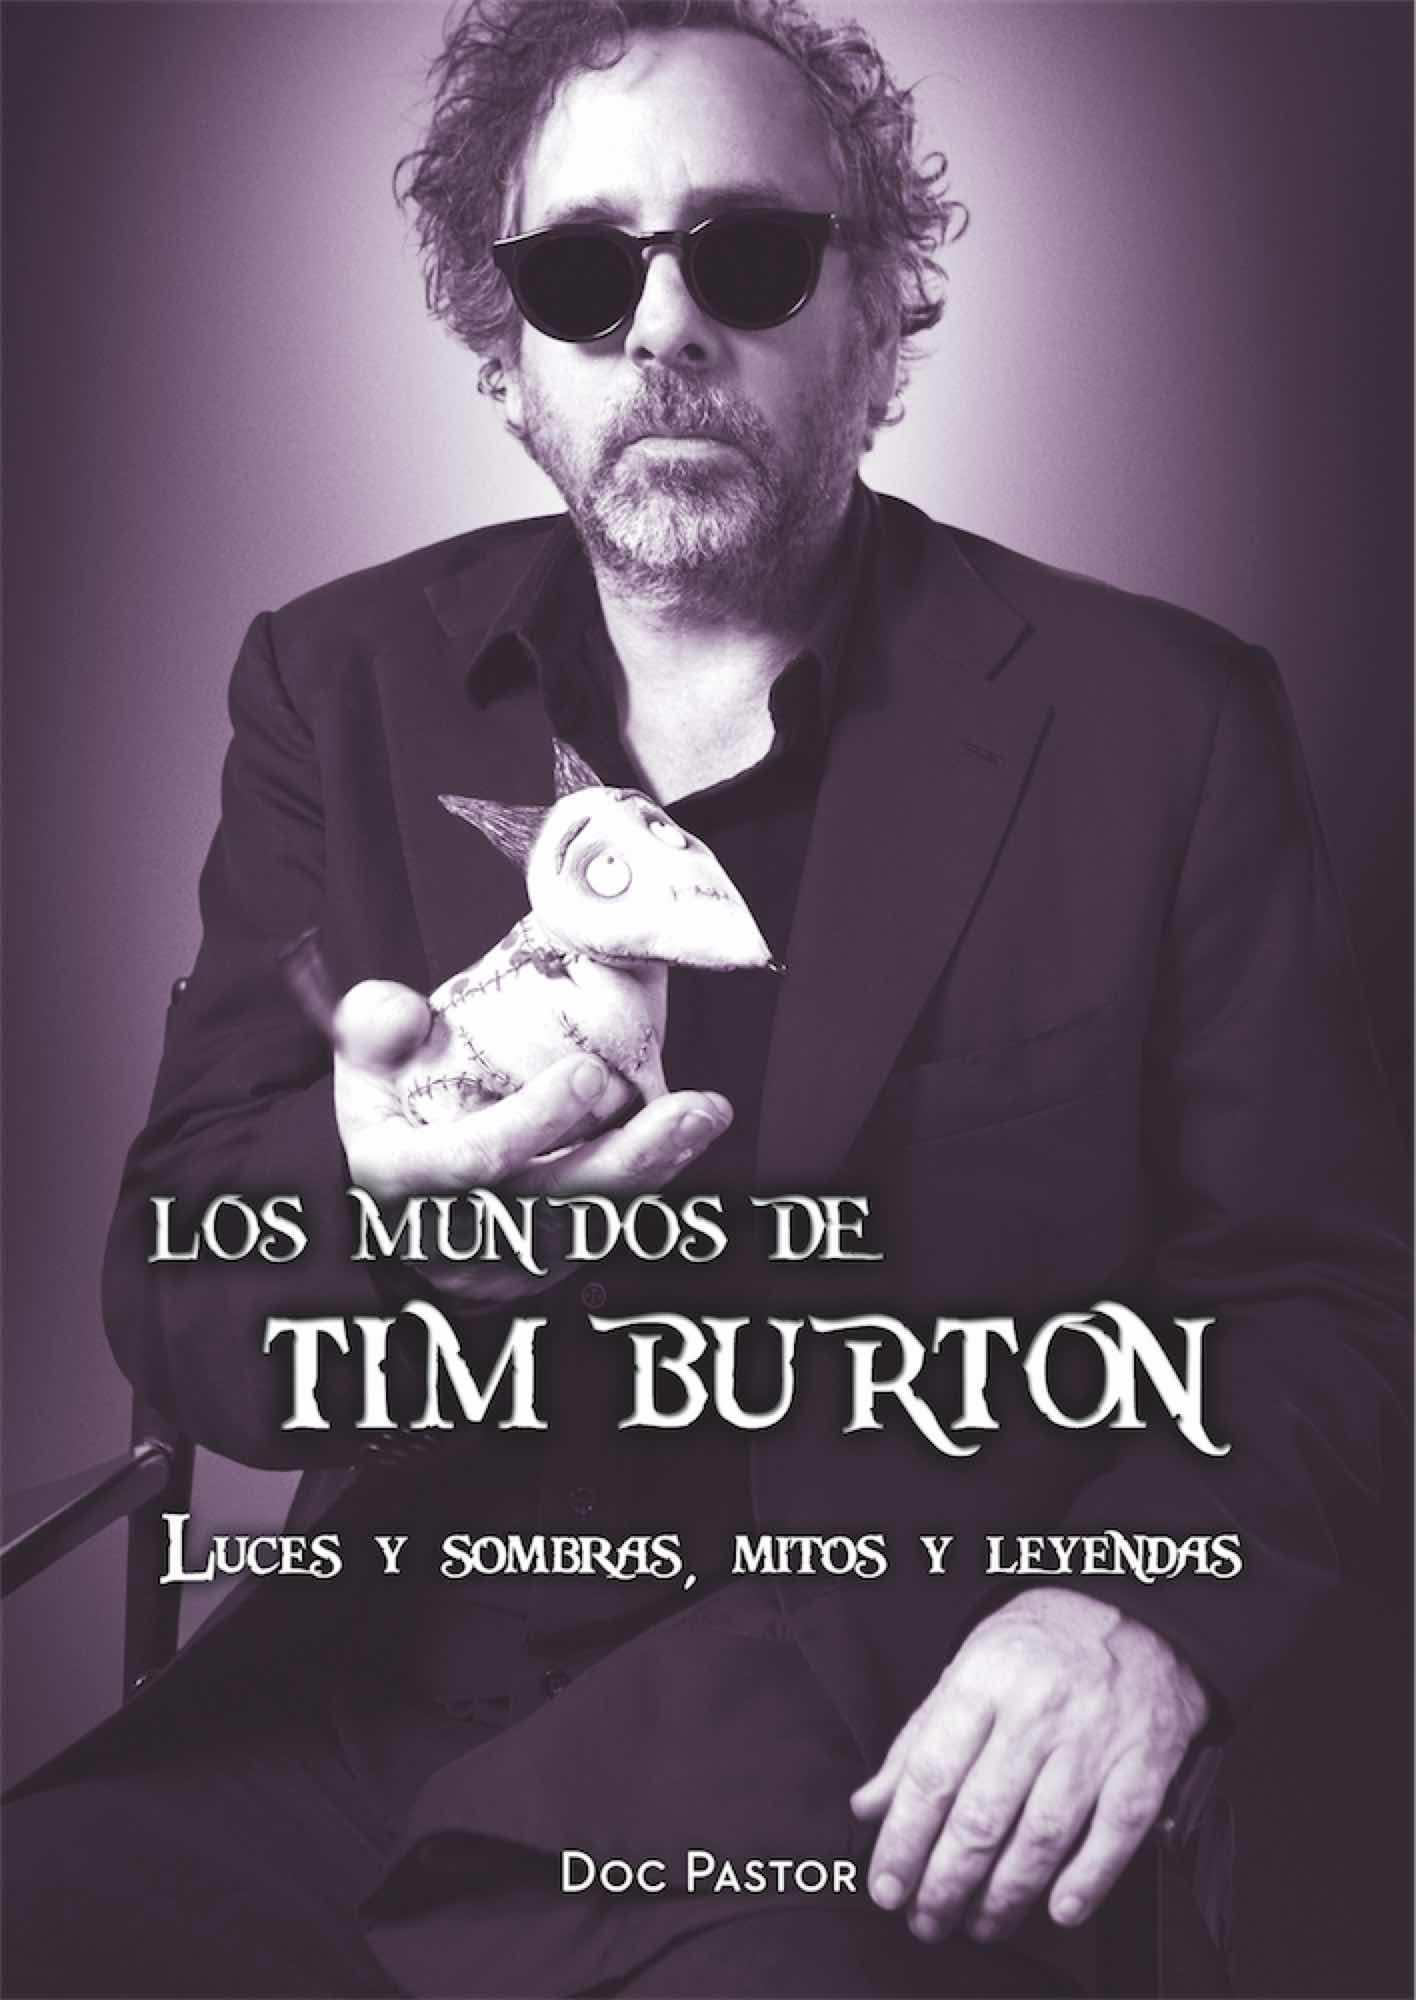 LOS MUNDOS DE TIM BURTON. LUCES Y SOMBRAS, MITOS Y LEYENDAS